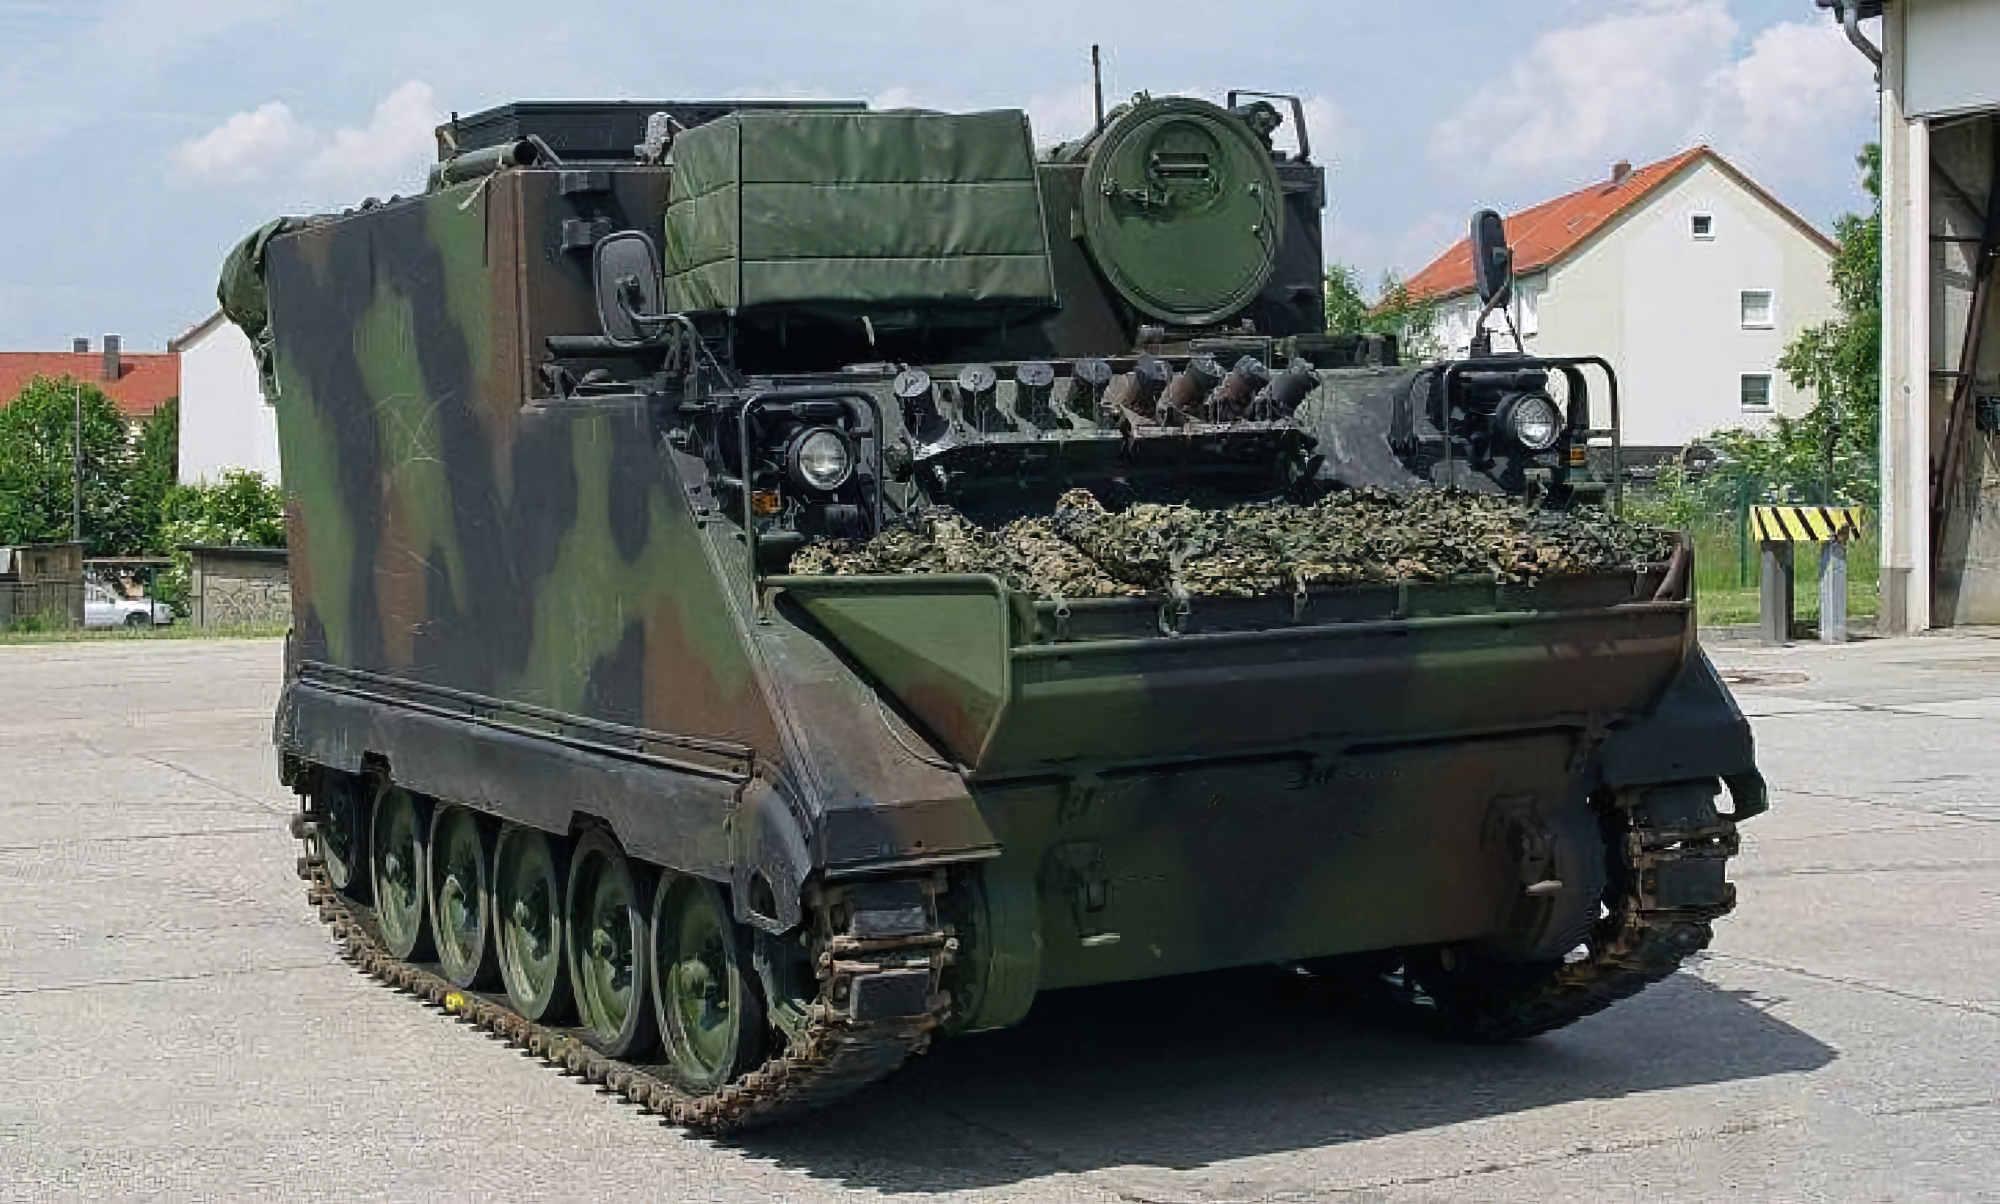 AFU fick en ny omgång M577 lednings- och stabsfordon baserade på M113 pansarskyttefordon från Litauen